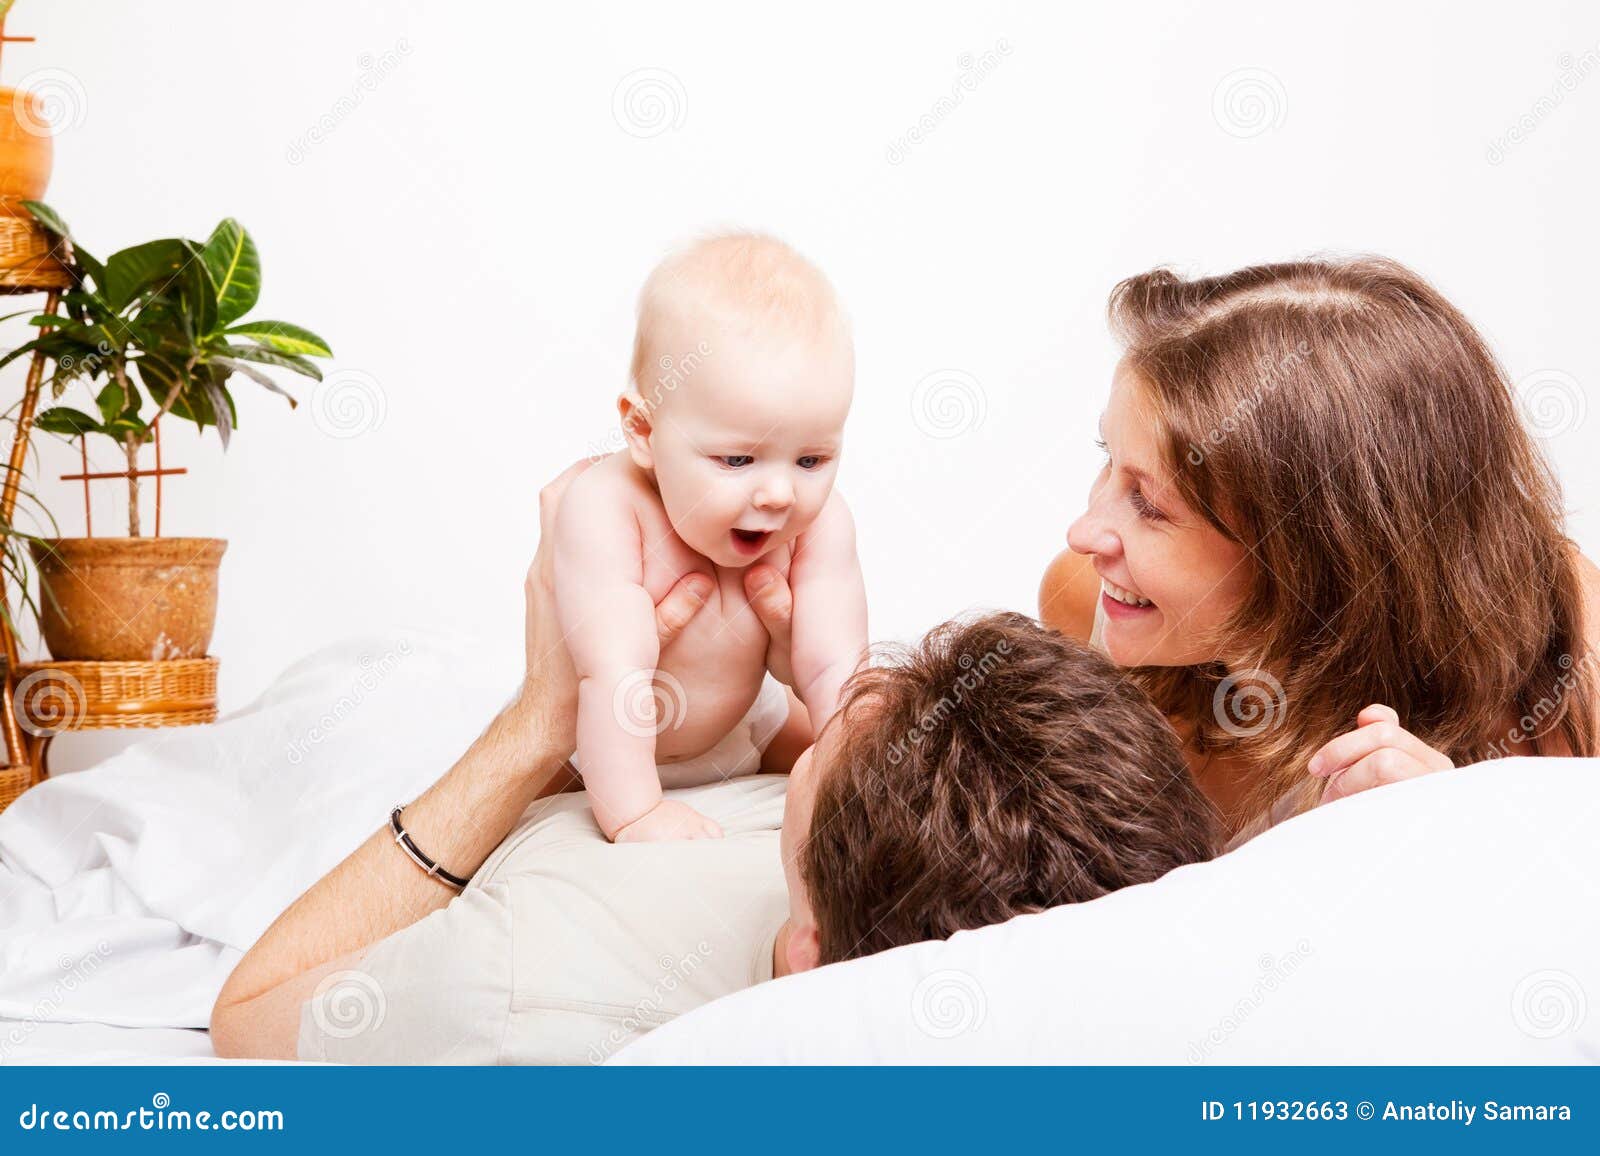 эротика папа с мамой и детьми (120) фото